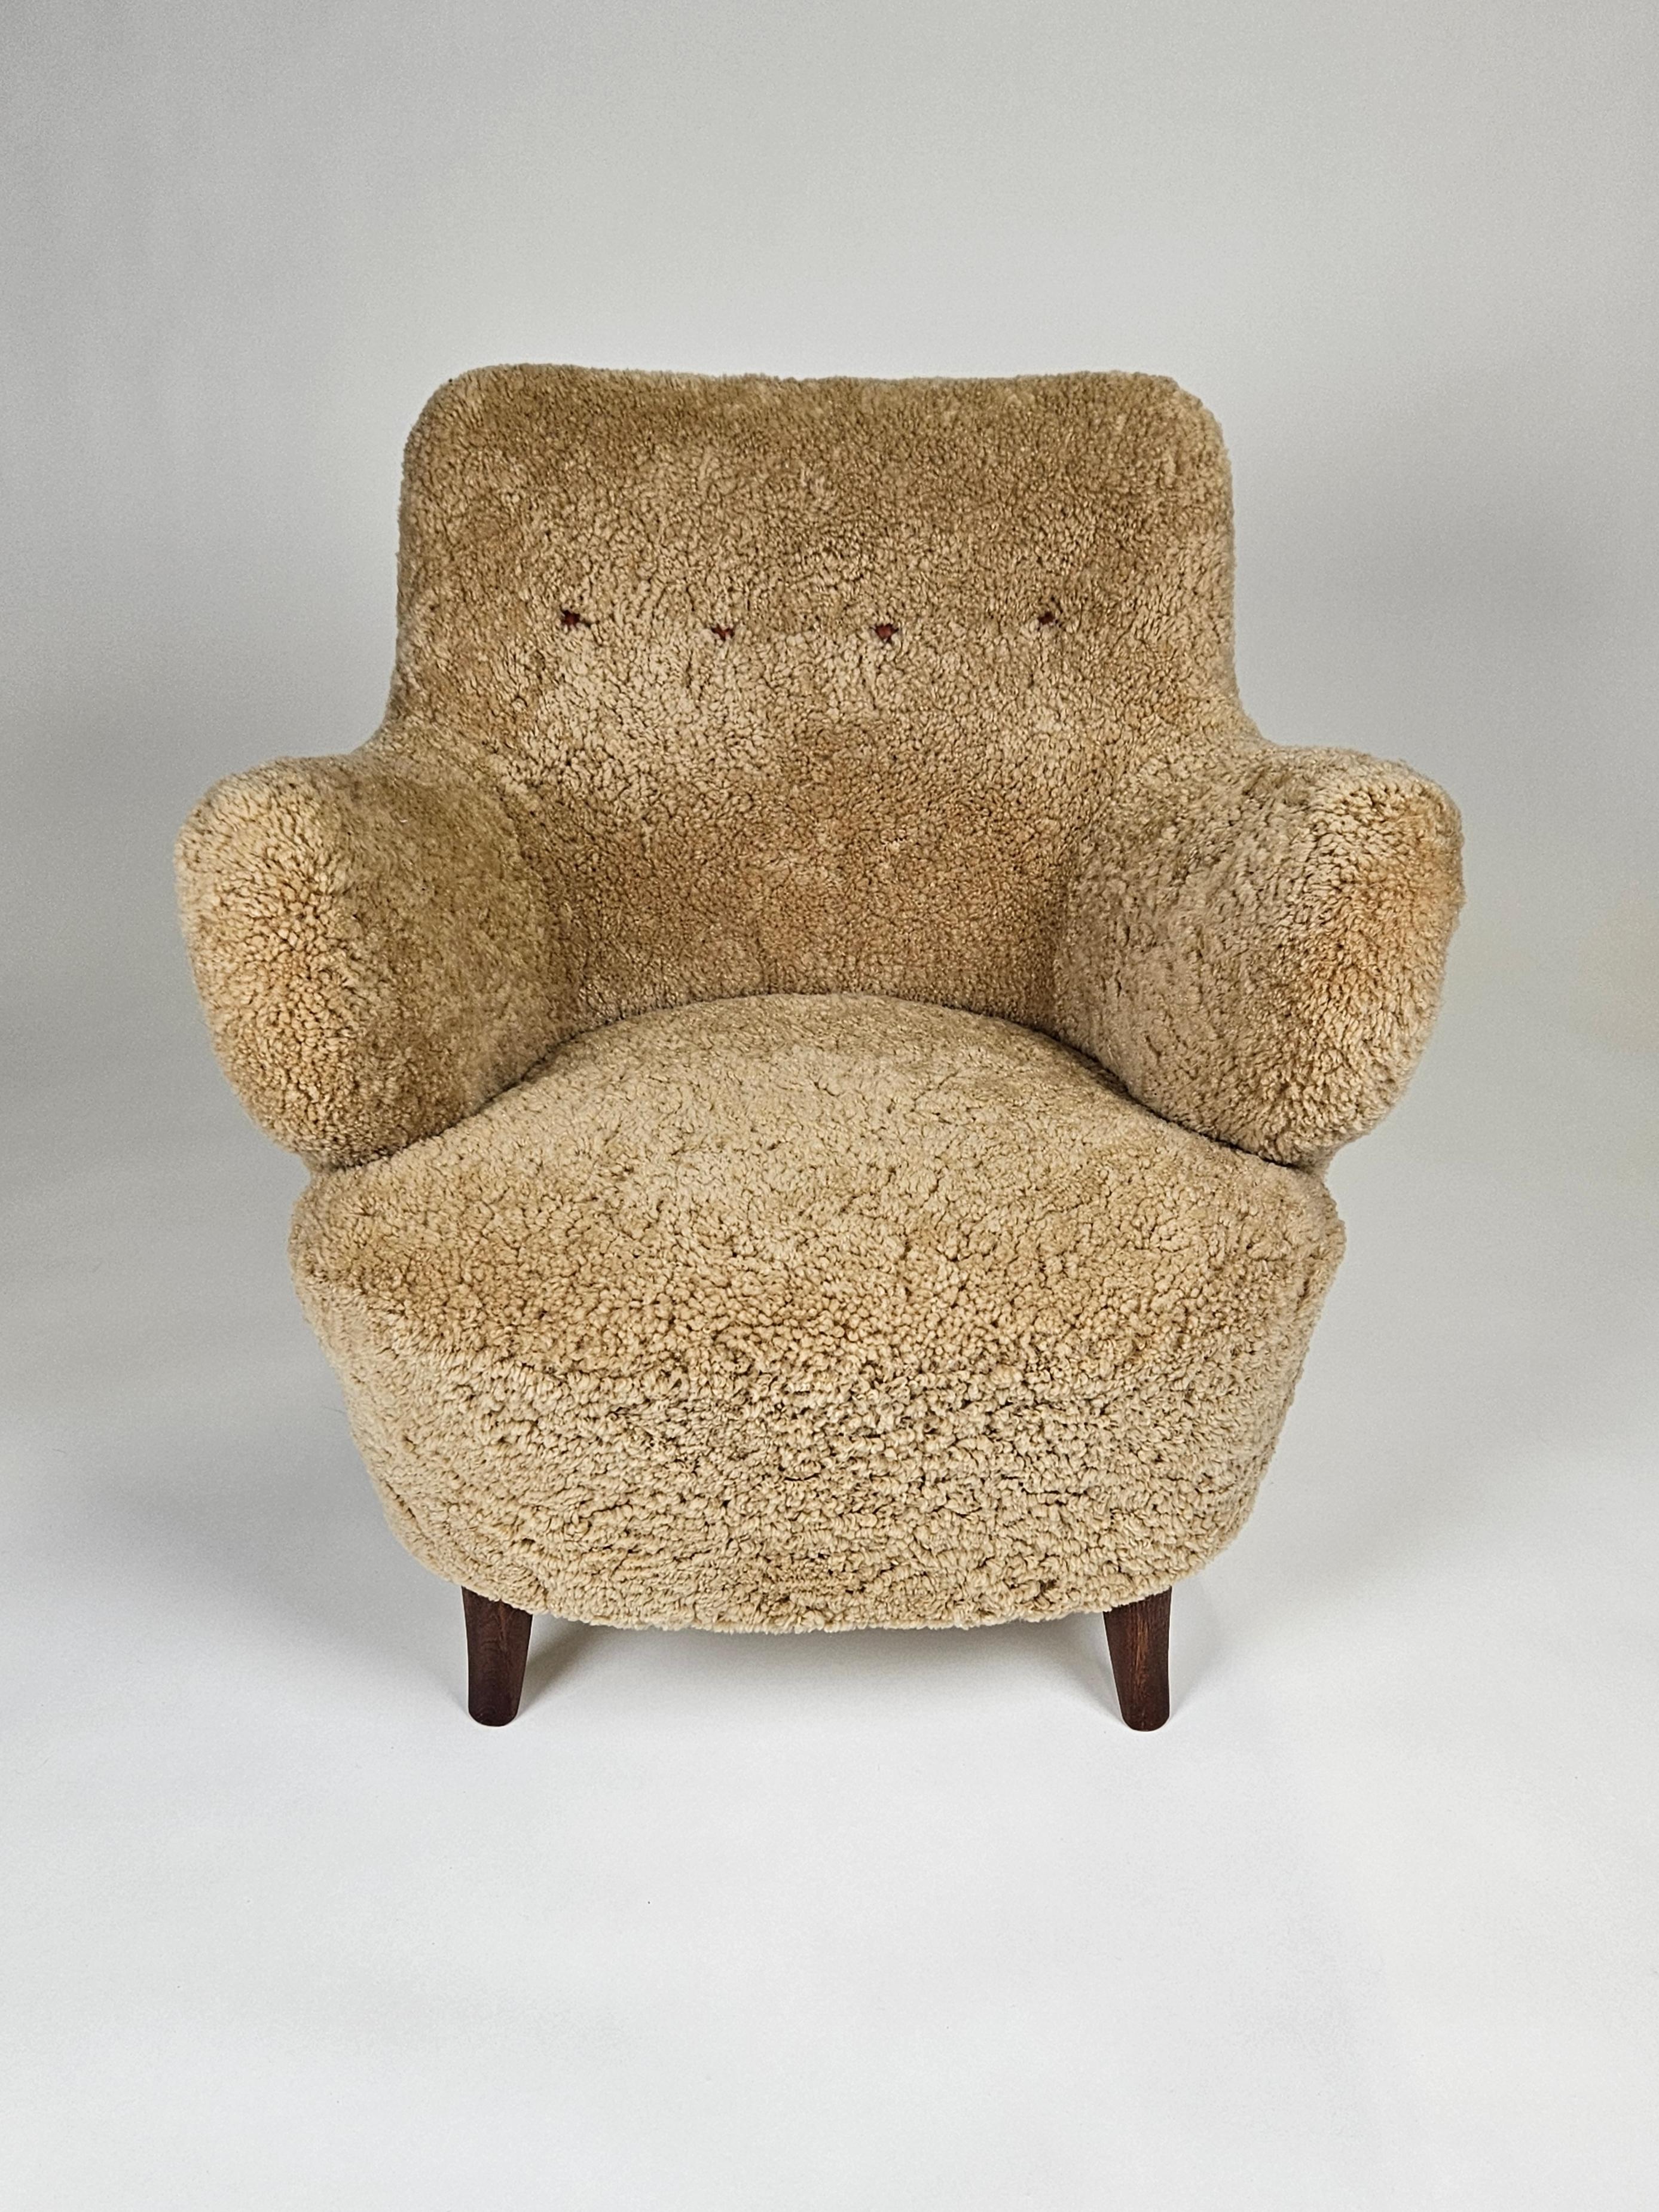 Scandinavian Modern Lounge Chair, entworfen von Gustav Axel Berg und hergestellt von seiner Firma AB G.A. Bergs, Schweden, in den 1940er Jahren. 

Beine aus Buche und gepolstert mit honigfarbenem Schafsleder. 

Äußerst seltenes Modell. 